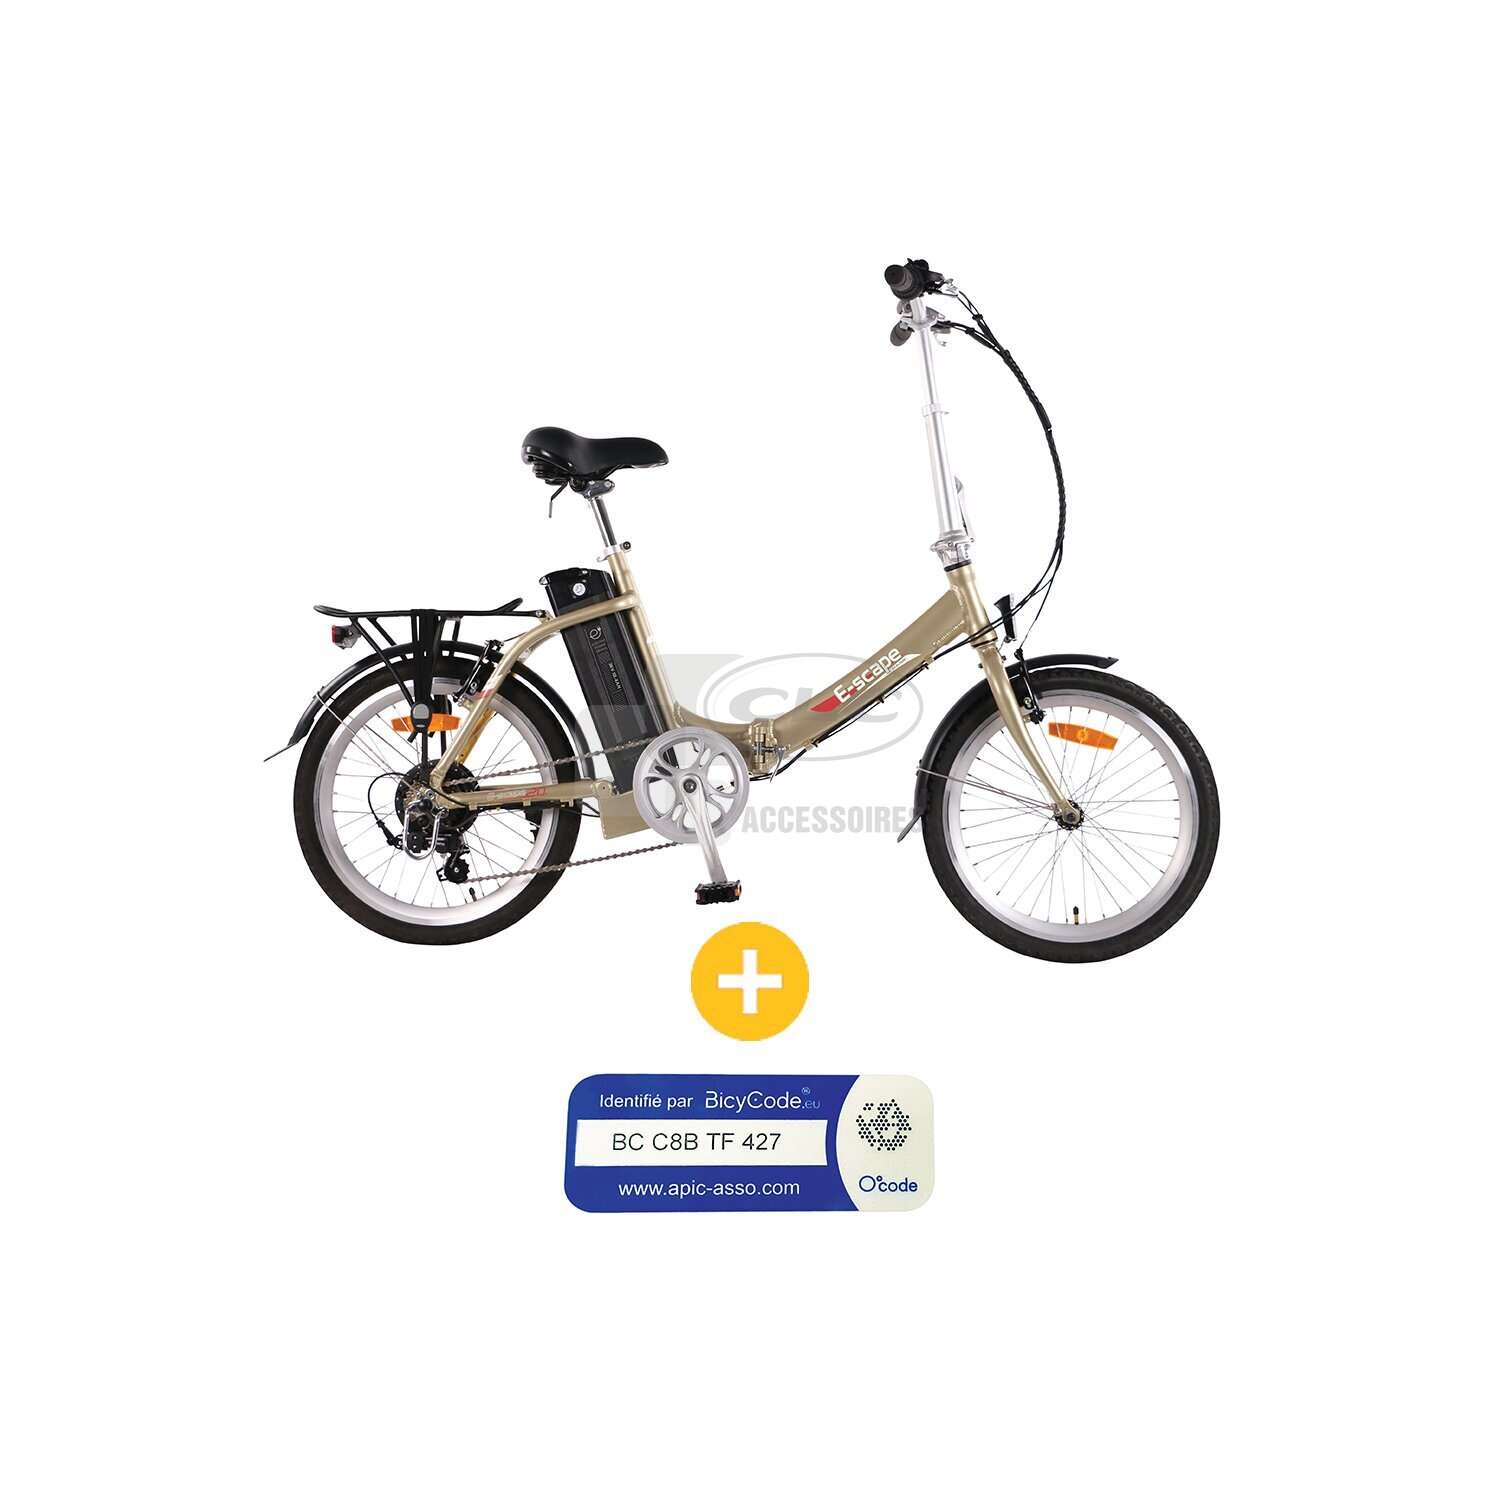 Accessoires et pièces détachées pour vélo électrique